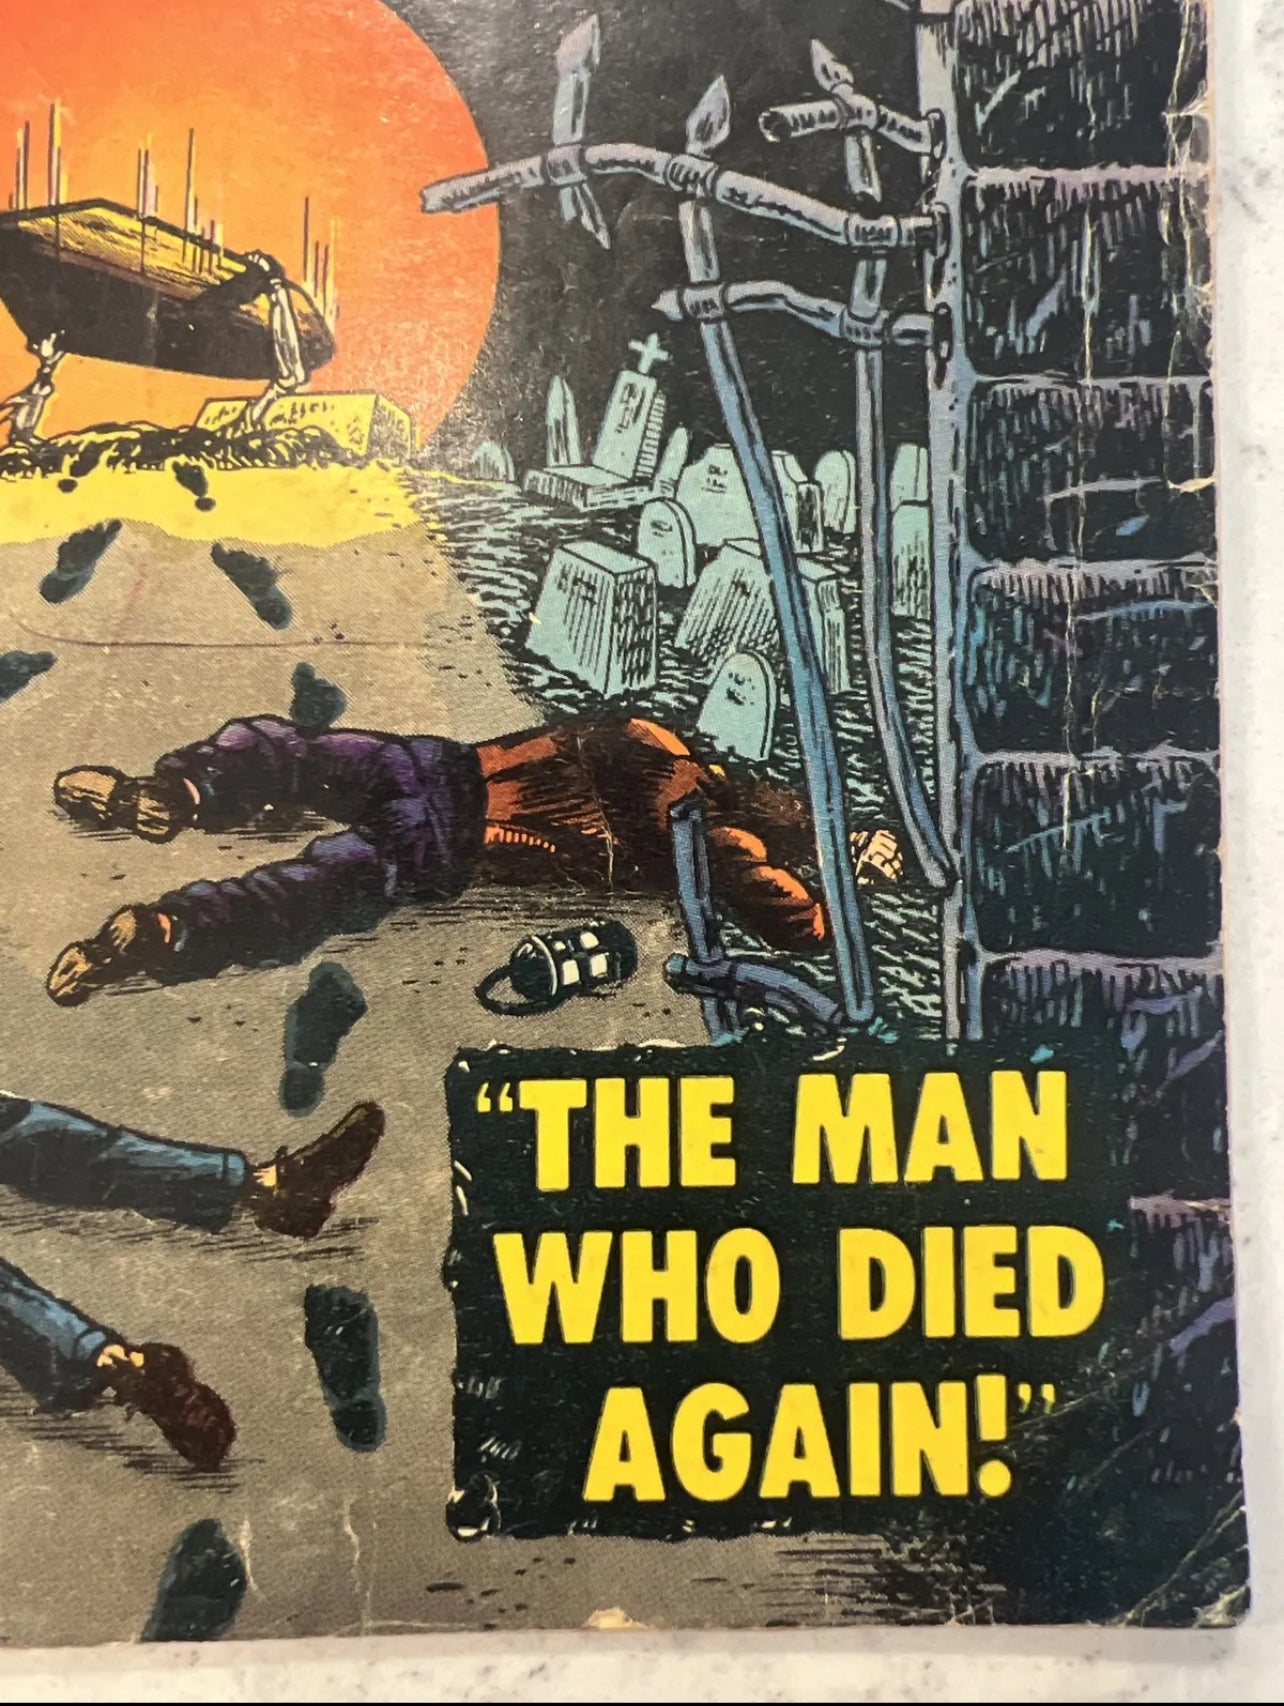 Uncanny Tales #19 (Marvel/Atlas 1954, Stan Lee Editor!) Pre Code Horror